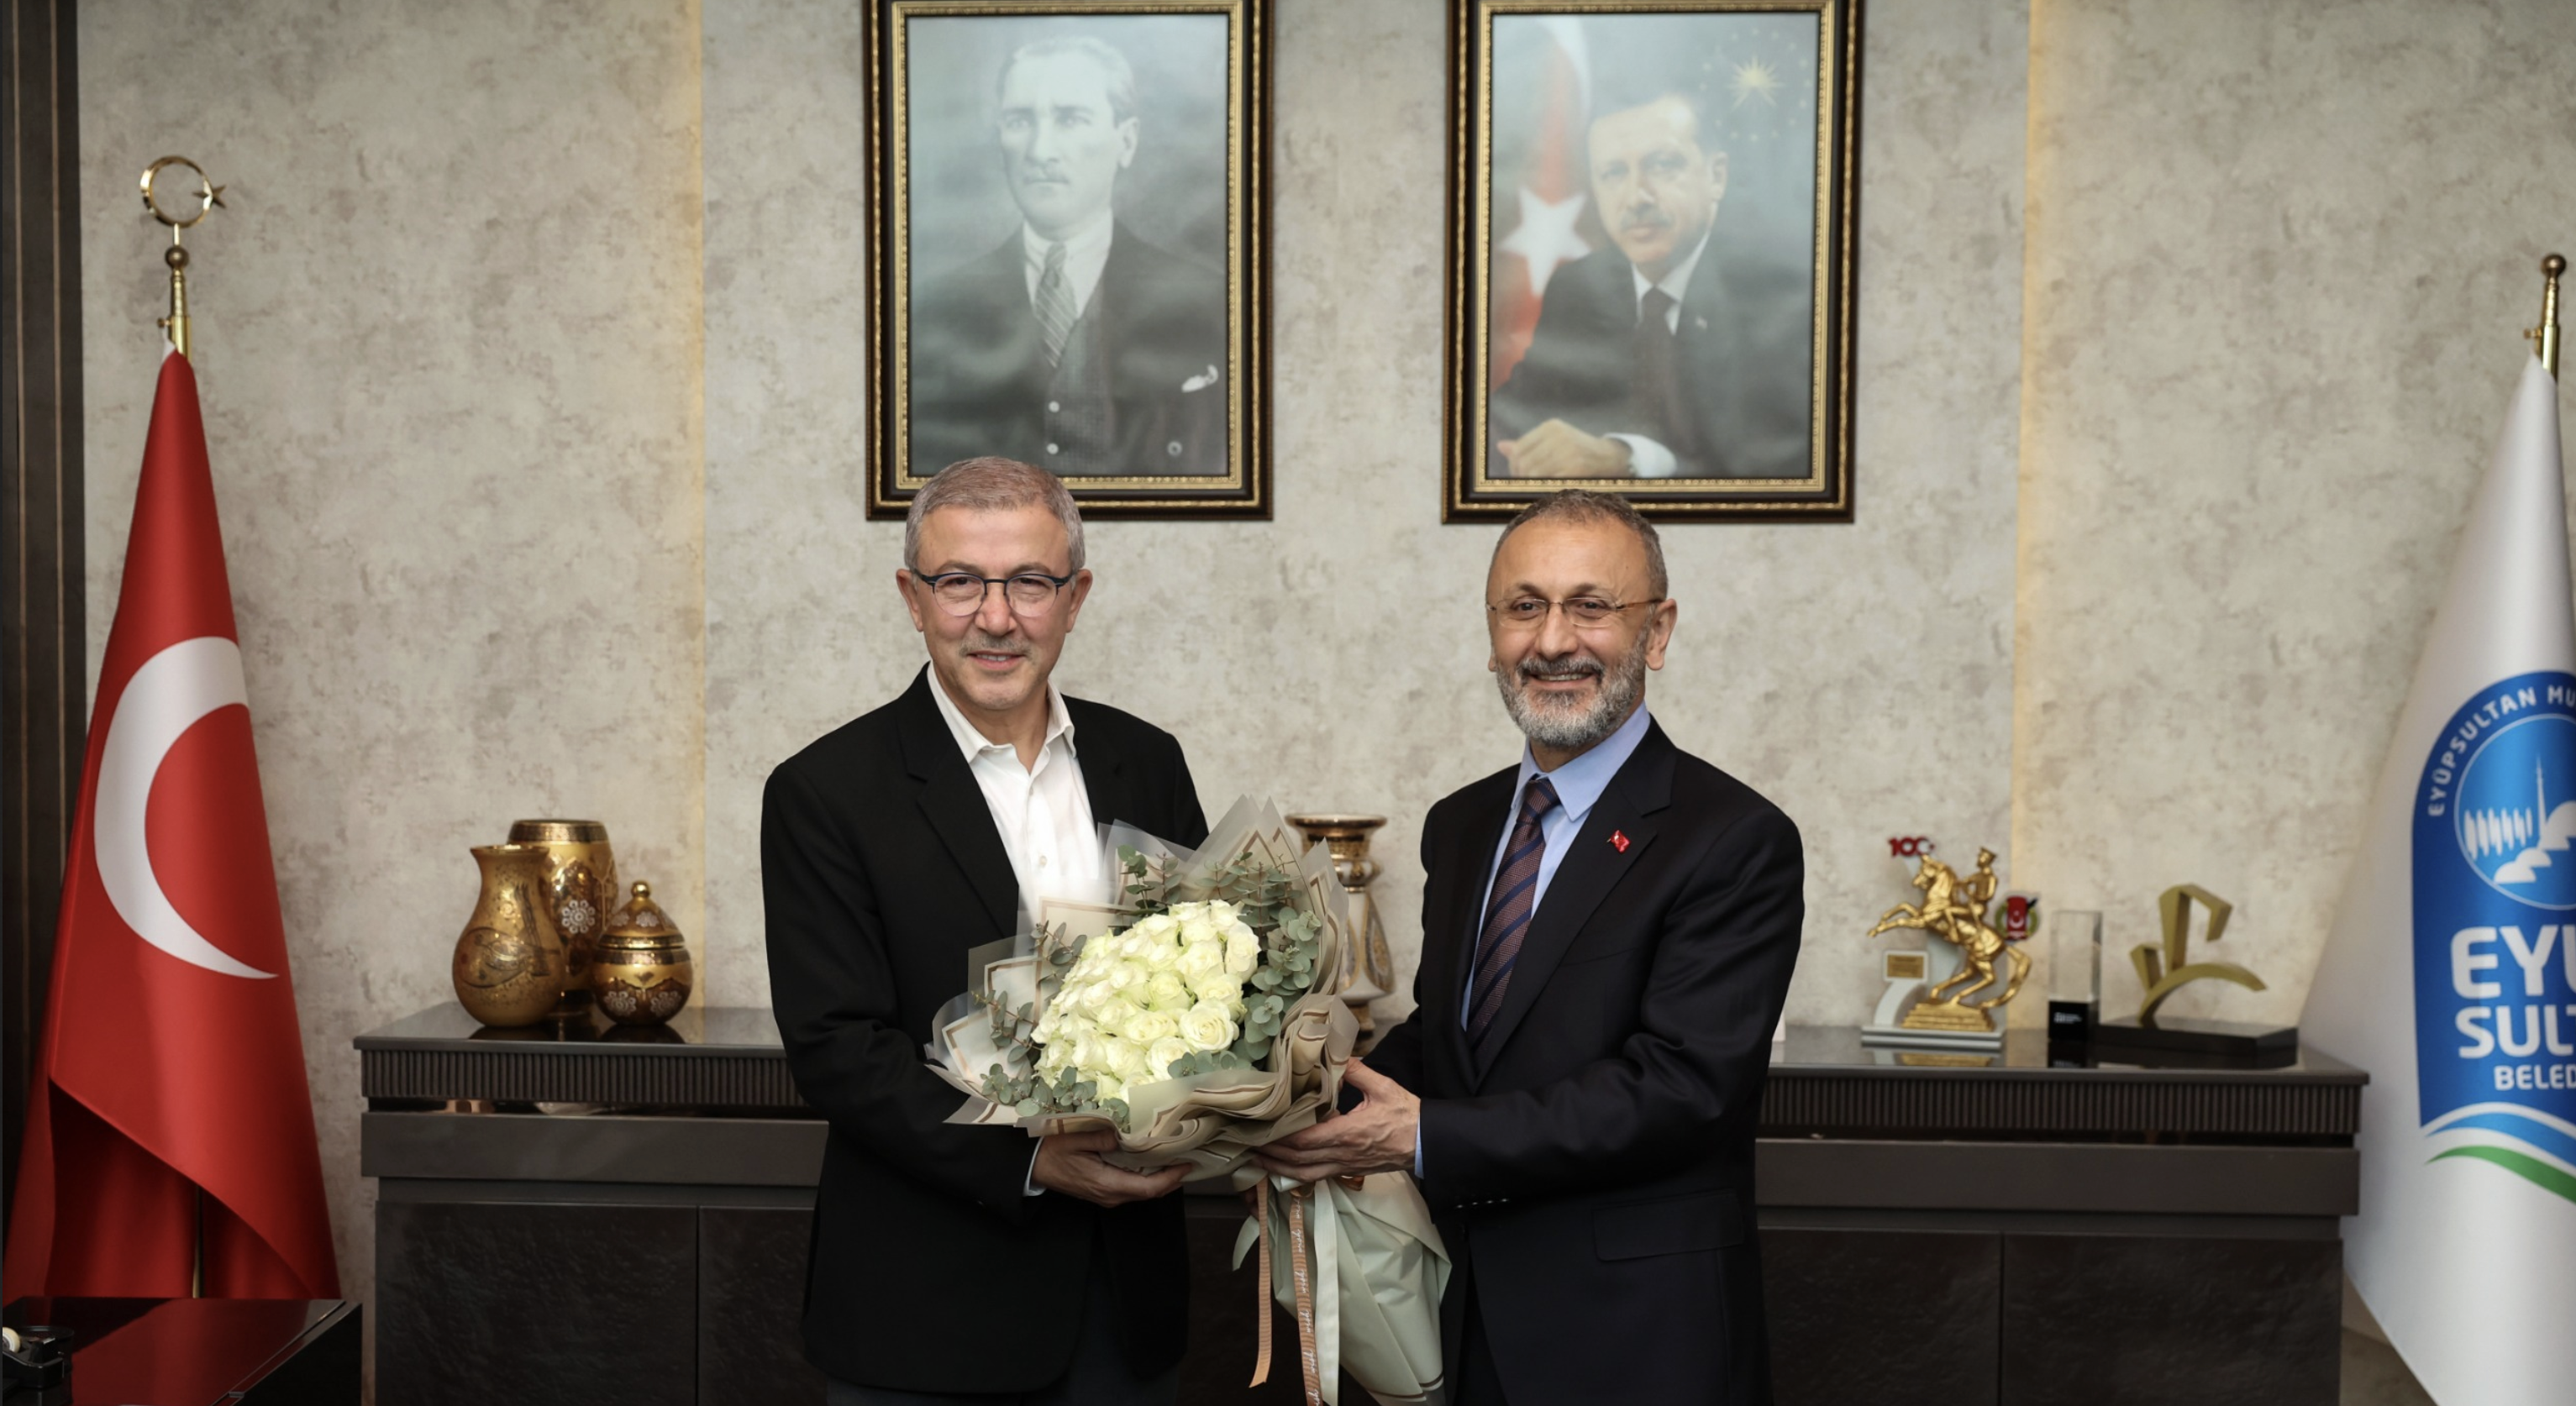 Deniz Köken Eyüpsultan Yeni Belediye Başkanı Dr. Mithat Bülent Özmen'e görevi teslim etti. 